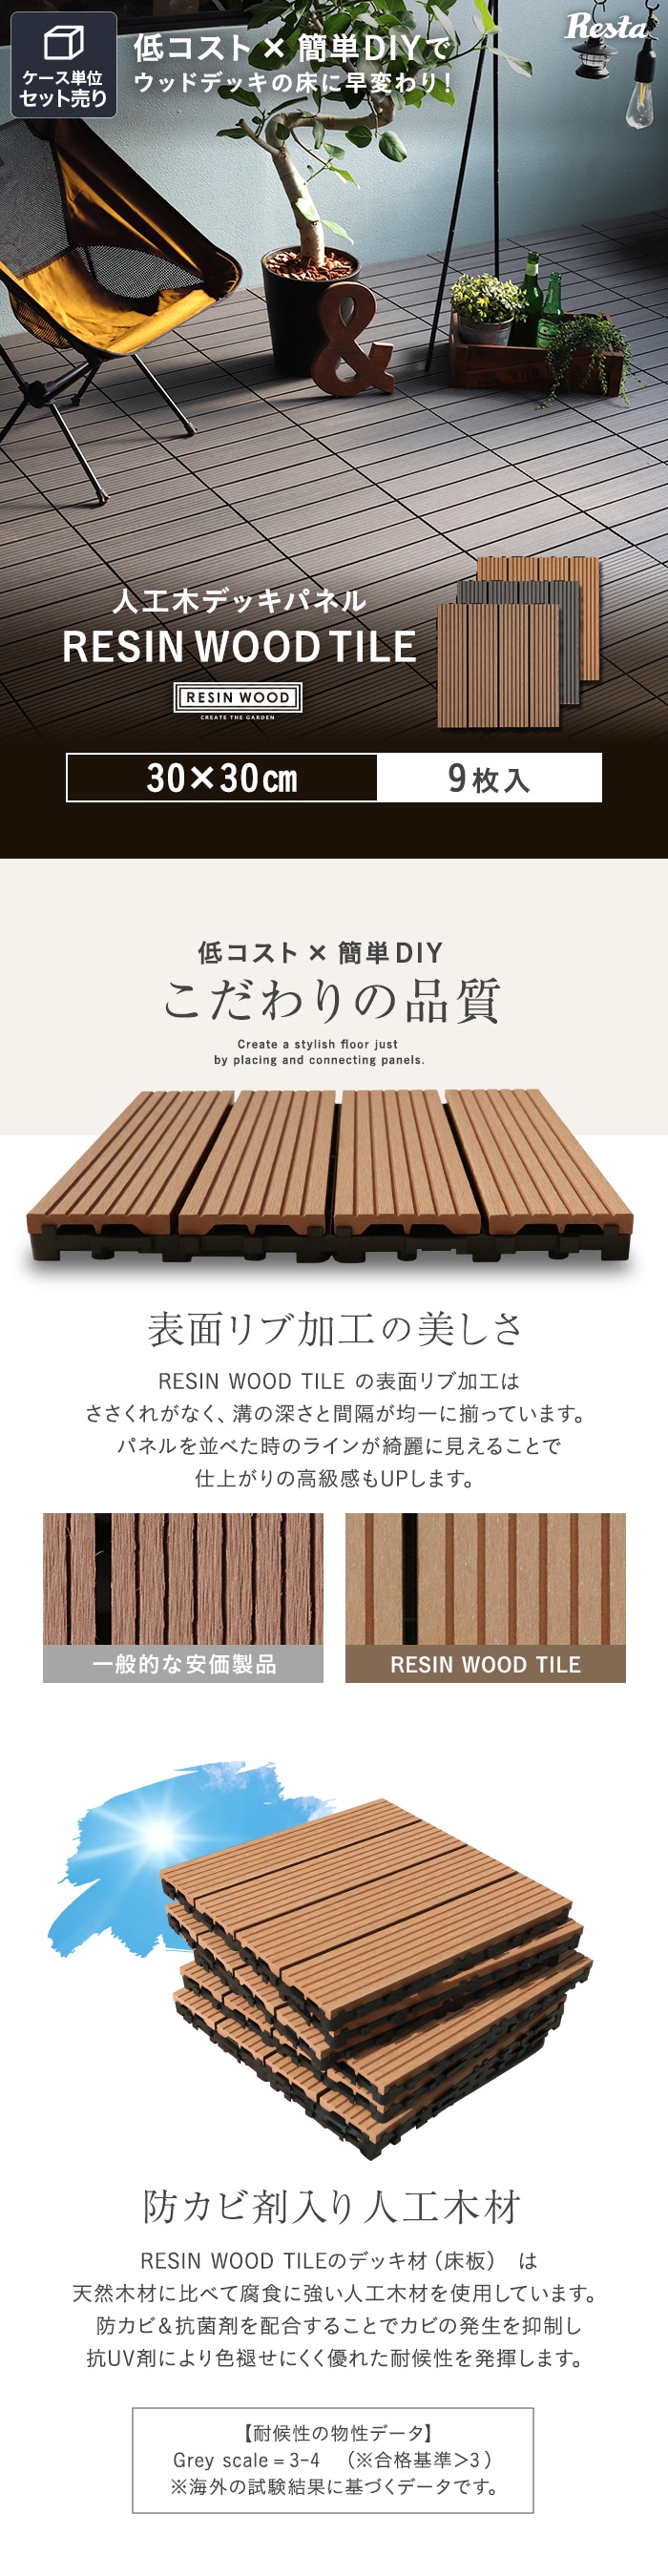 【ウッドパネル】【9枚セット】 人工木デッキパネル RESIN WOOD TILE 30×30